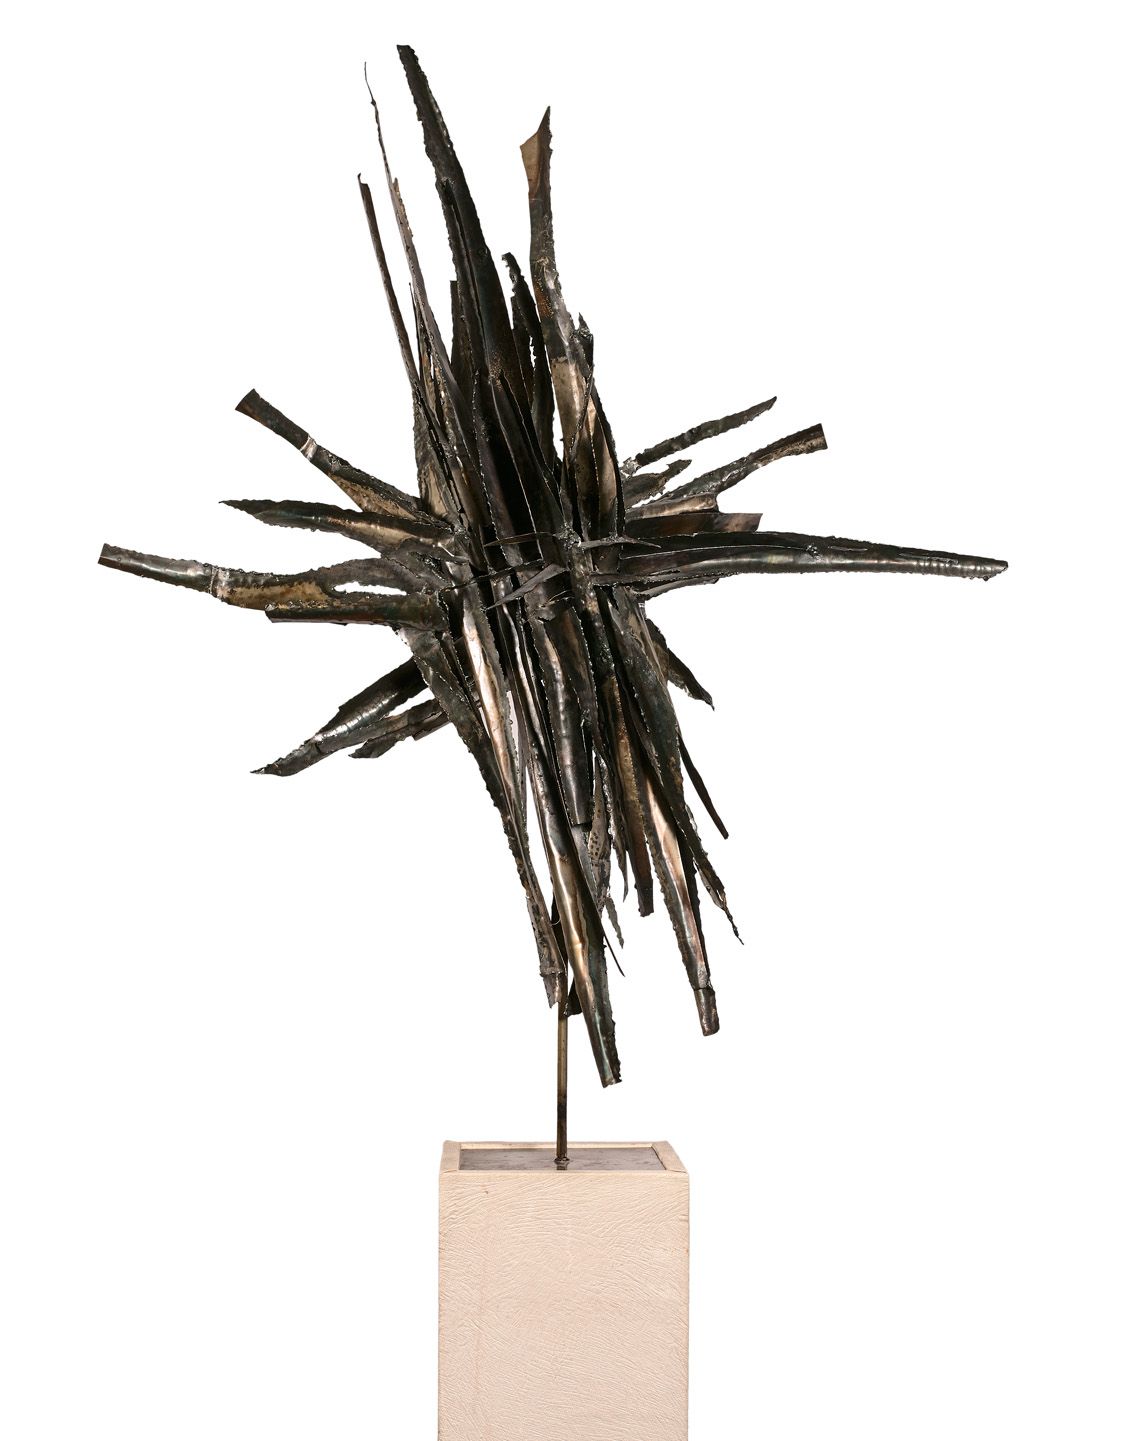 LEE Caroline LEE (1932-2014)

Composición abstracta

Escultura de metal soldado,&hellip;